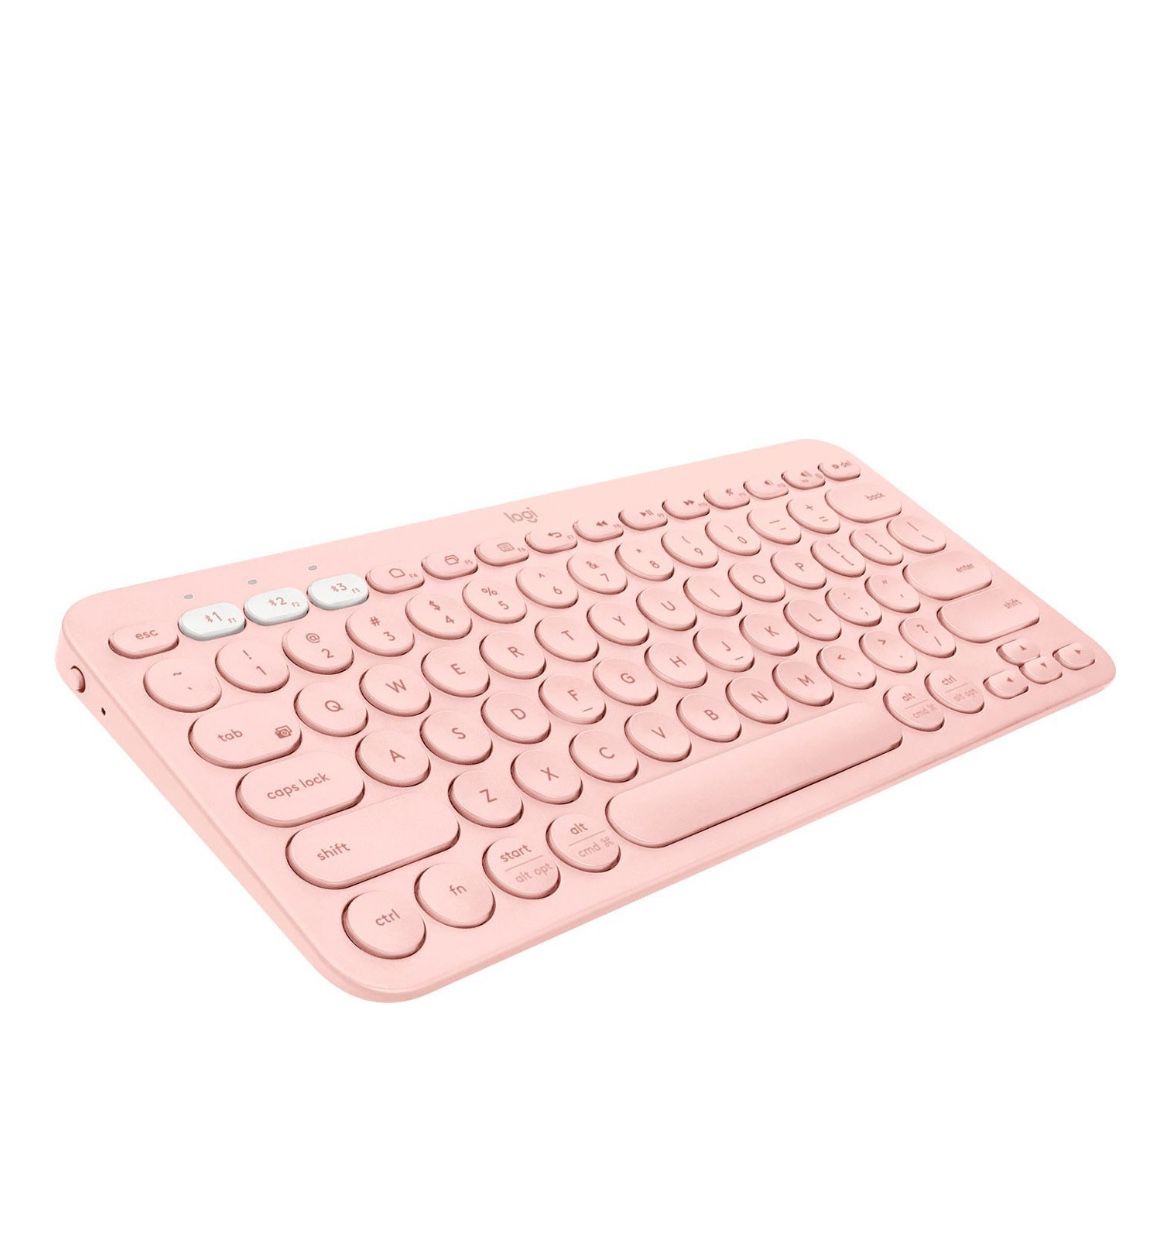 Keyboard/computer 